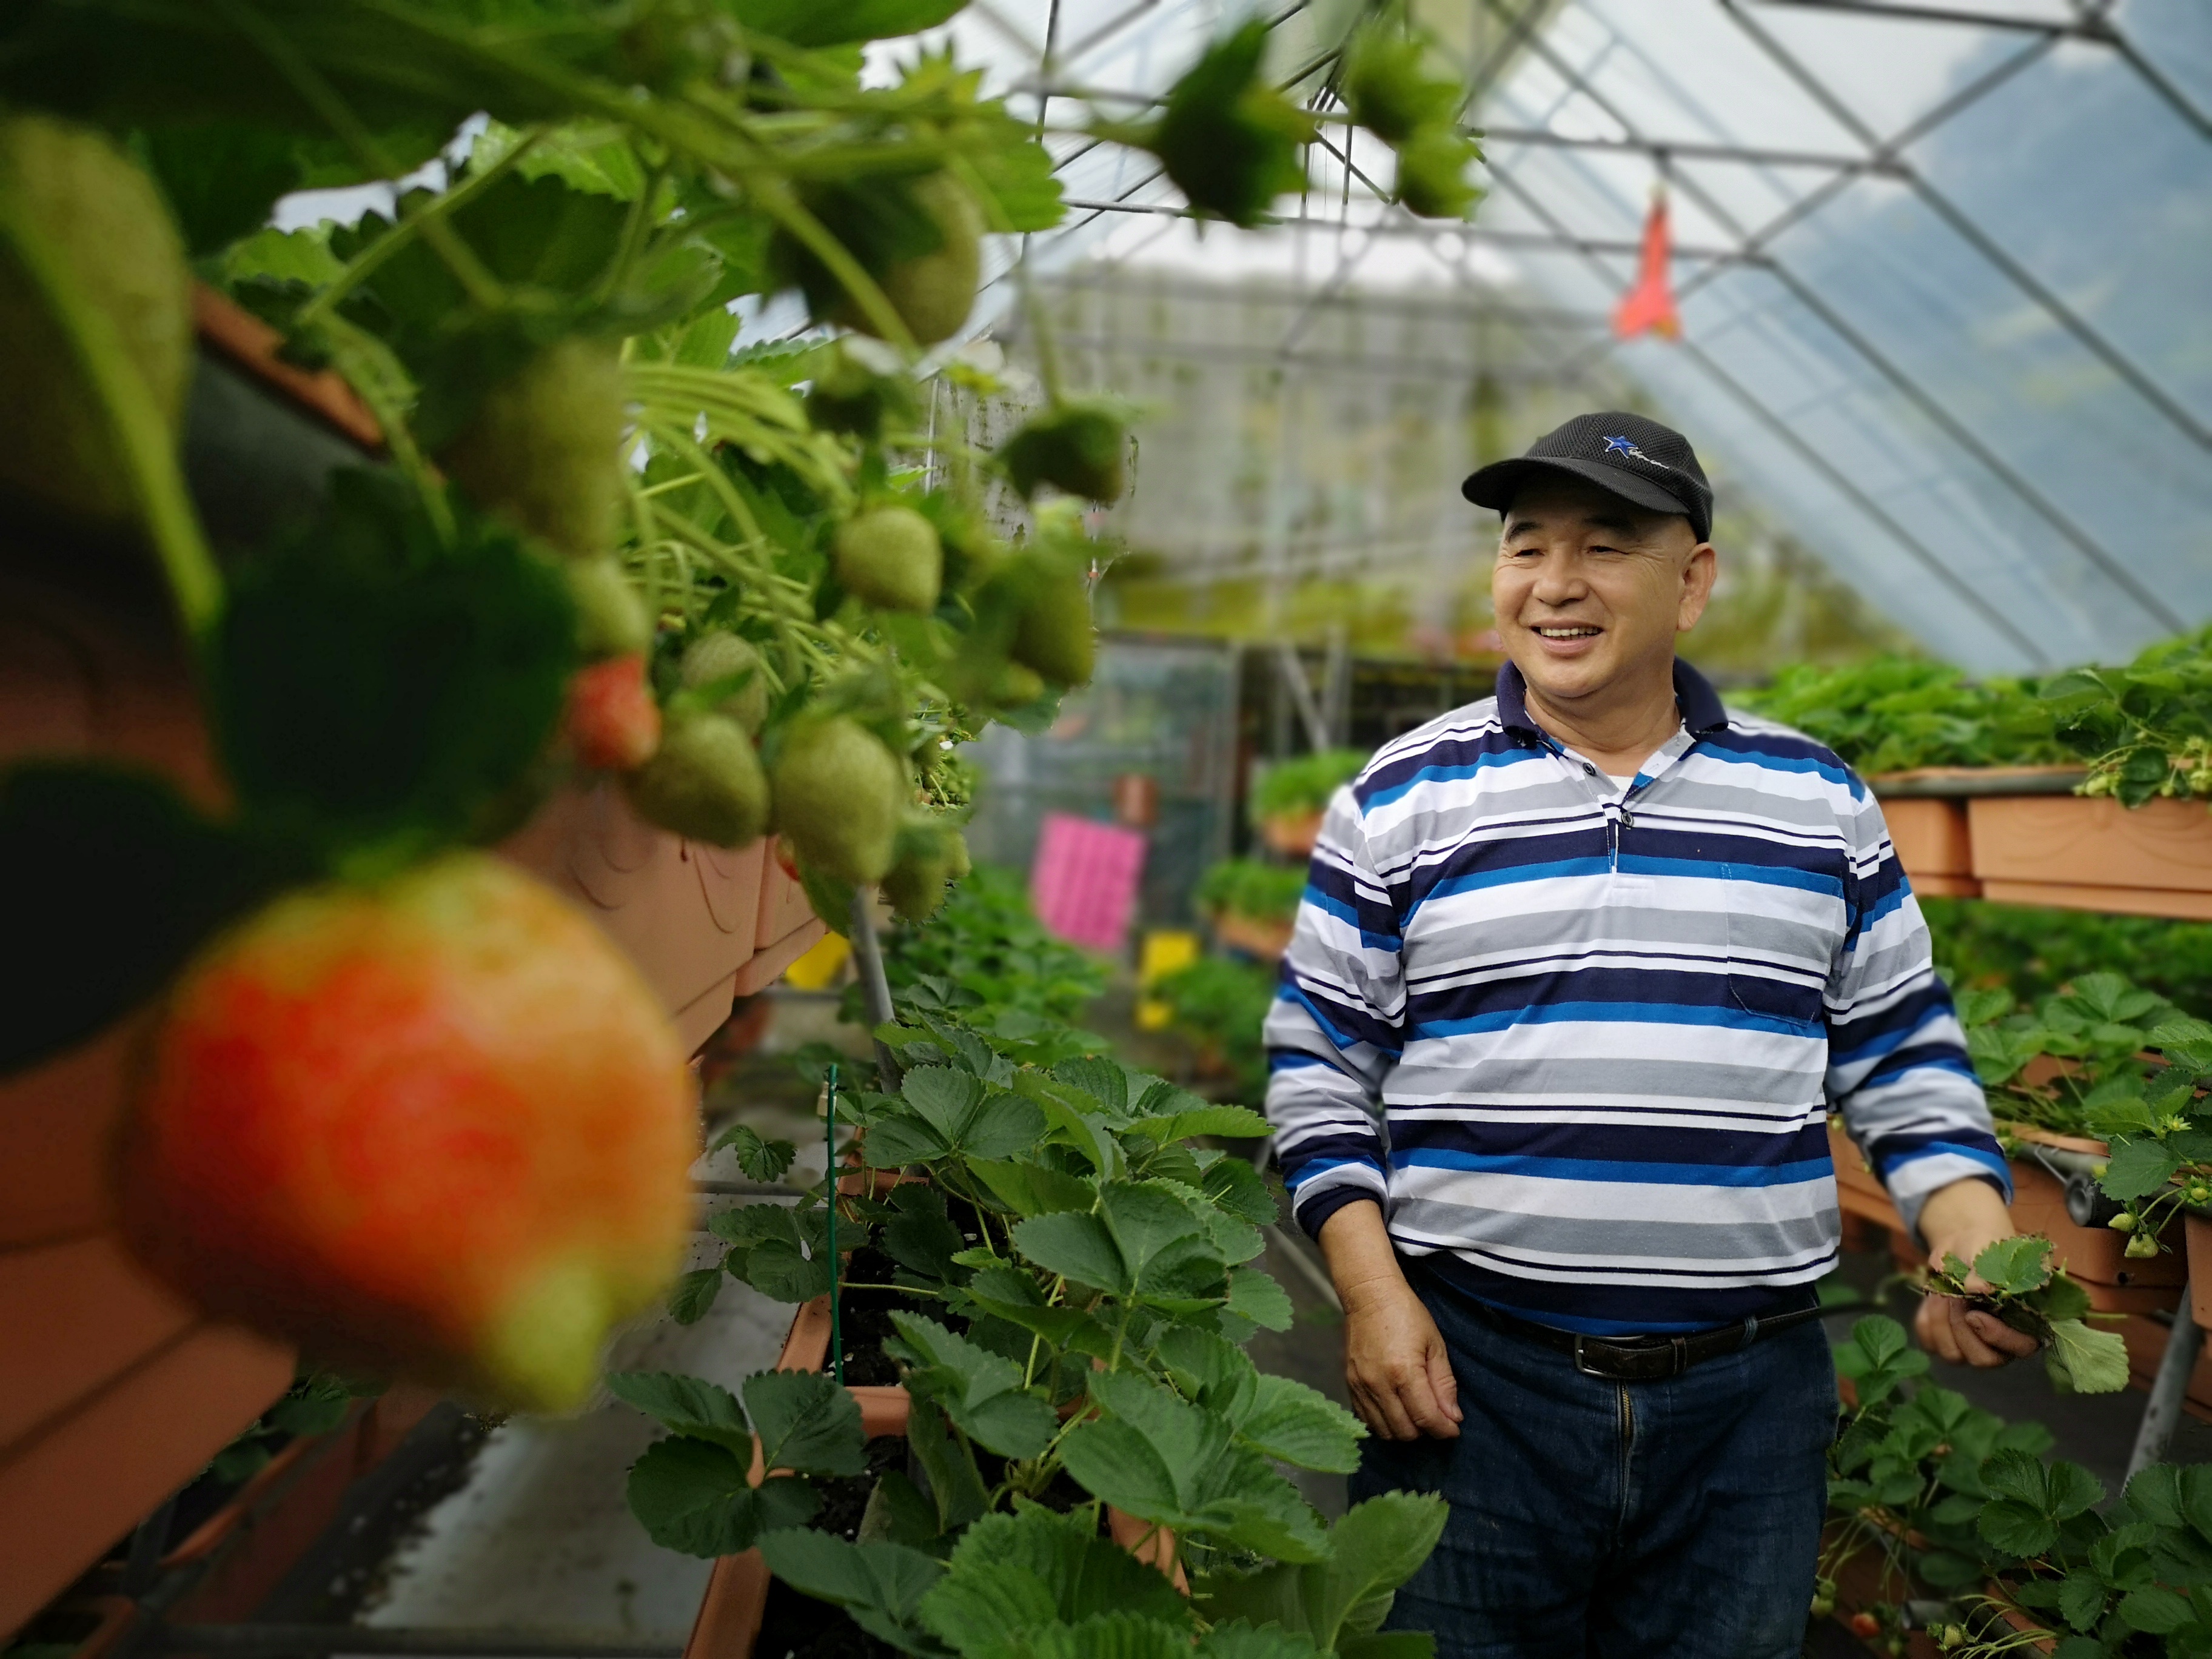 農場主人郭正勇細心照顧園區蔬果。